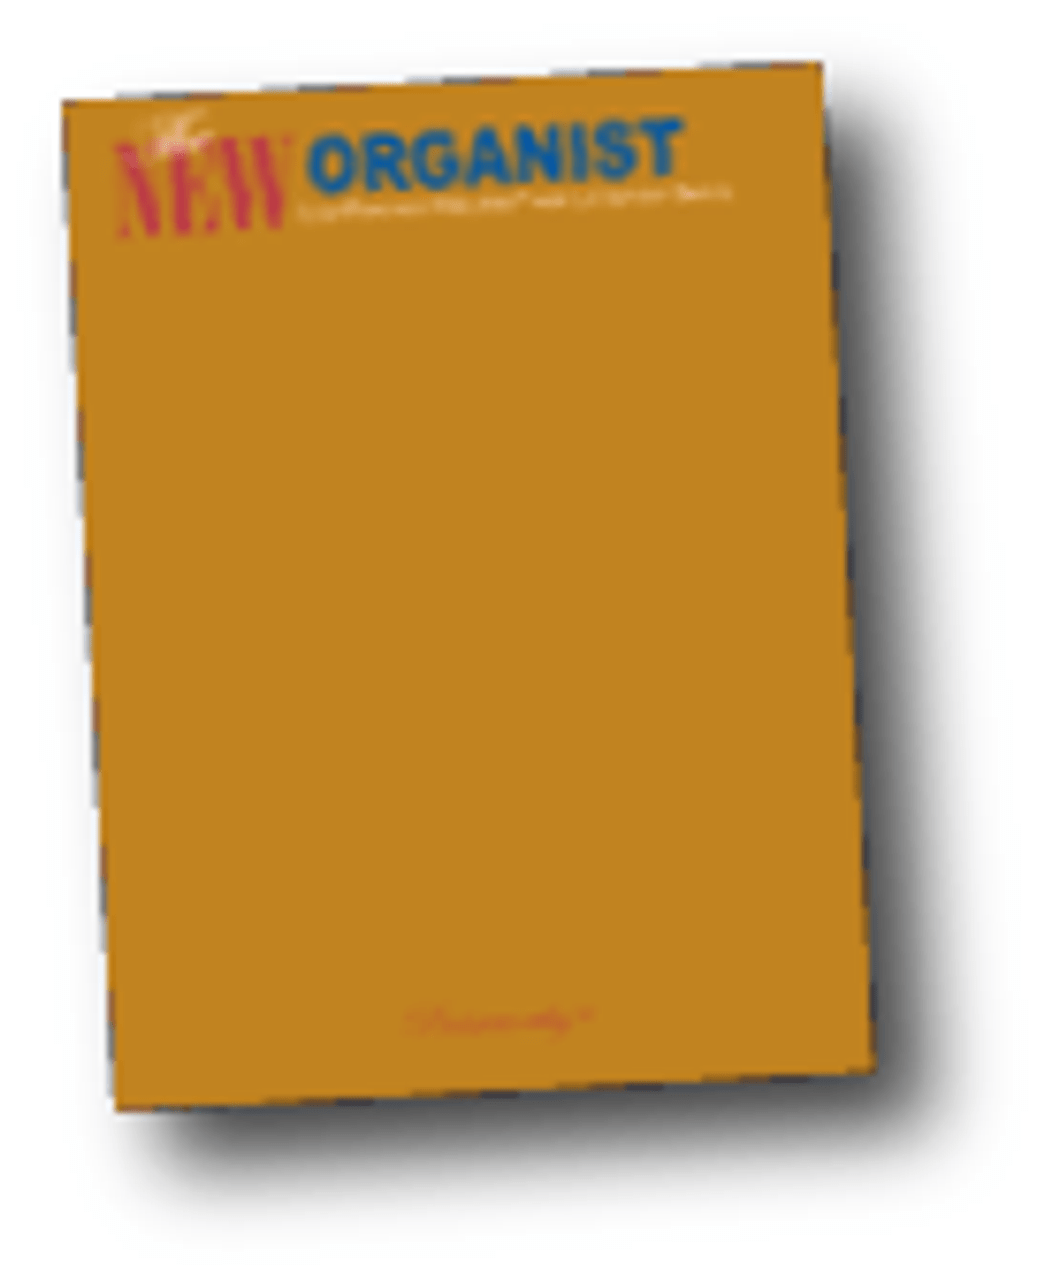 The New Organist Vol. 4 *